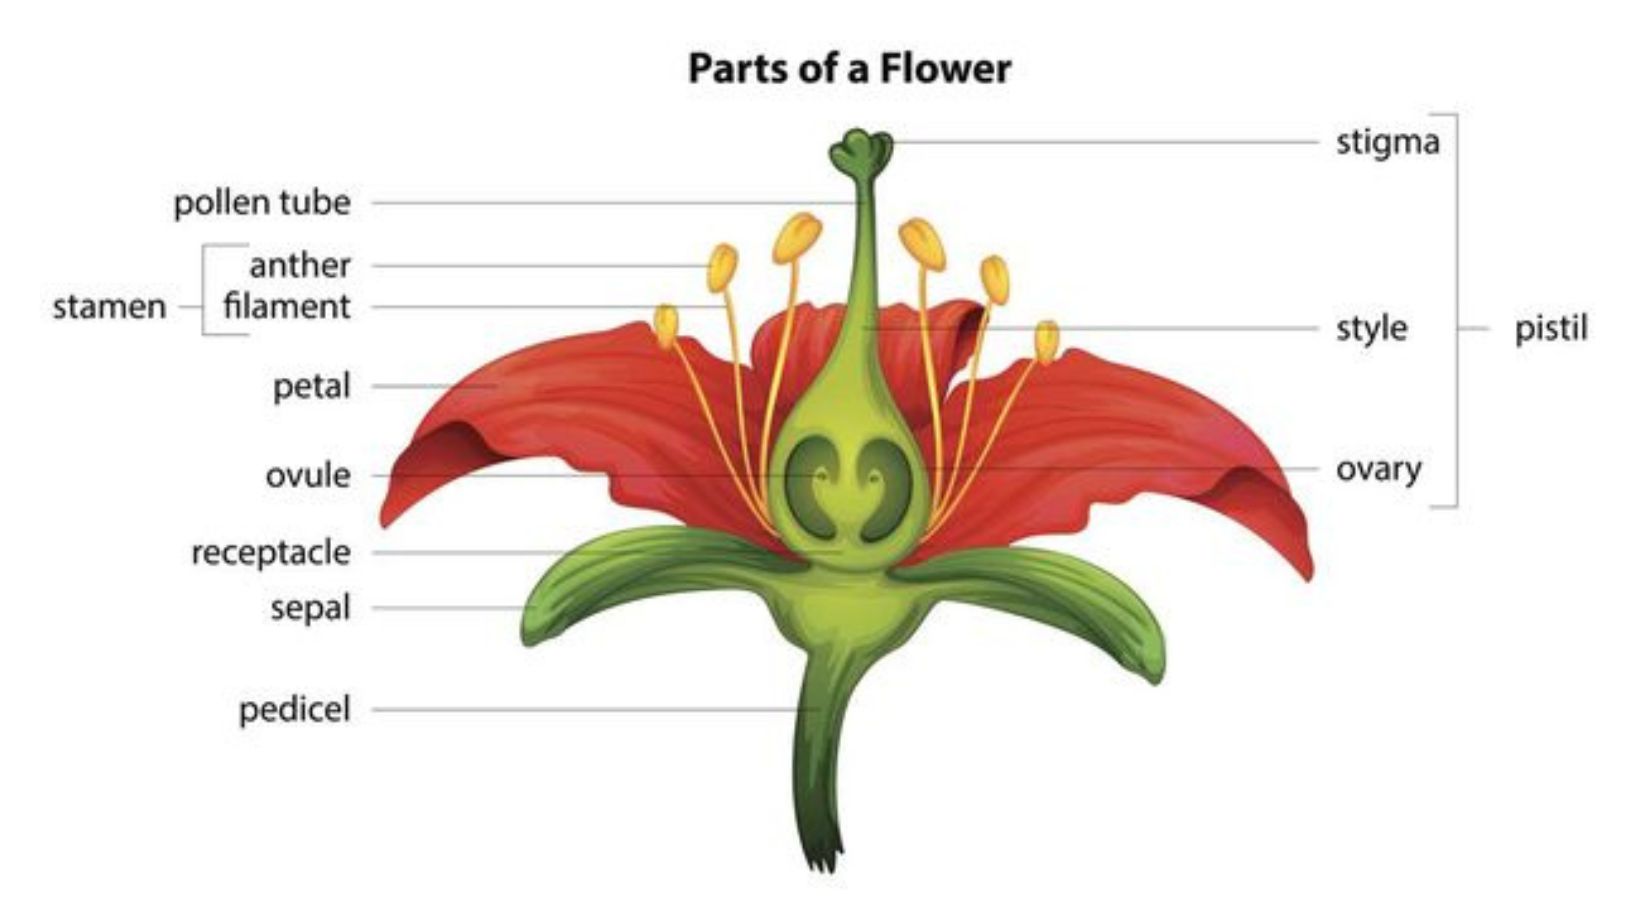 bagian bunga yang berfungsi sebagai alat kelamin jantan adalah